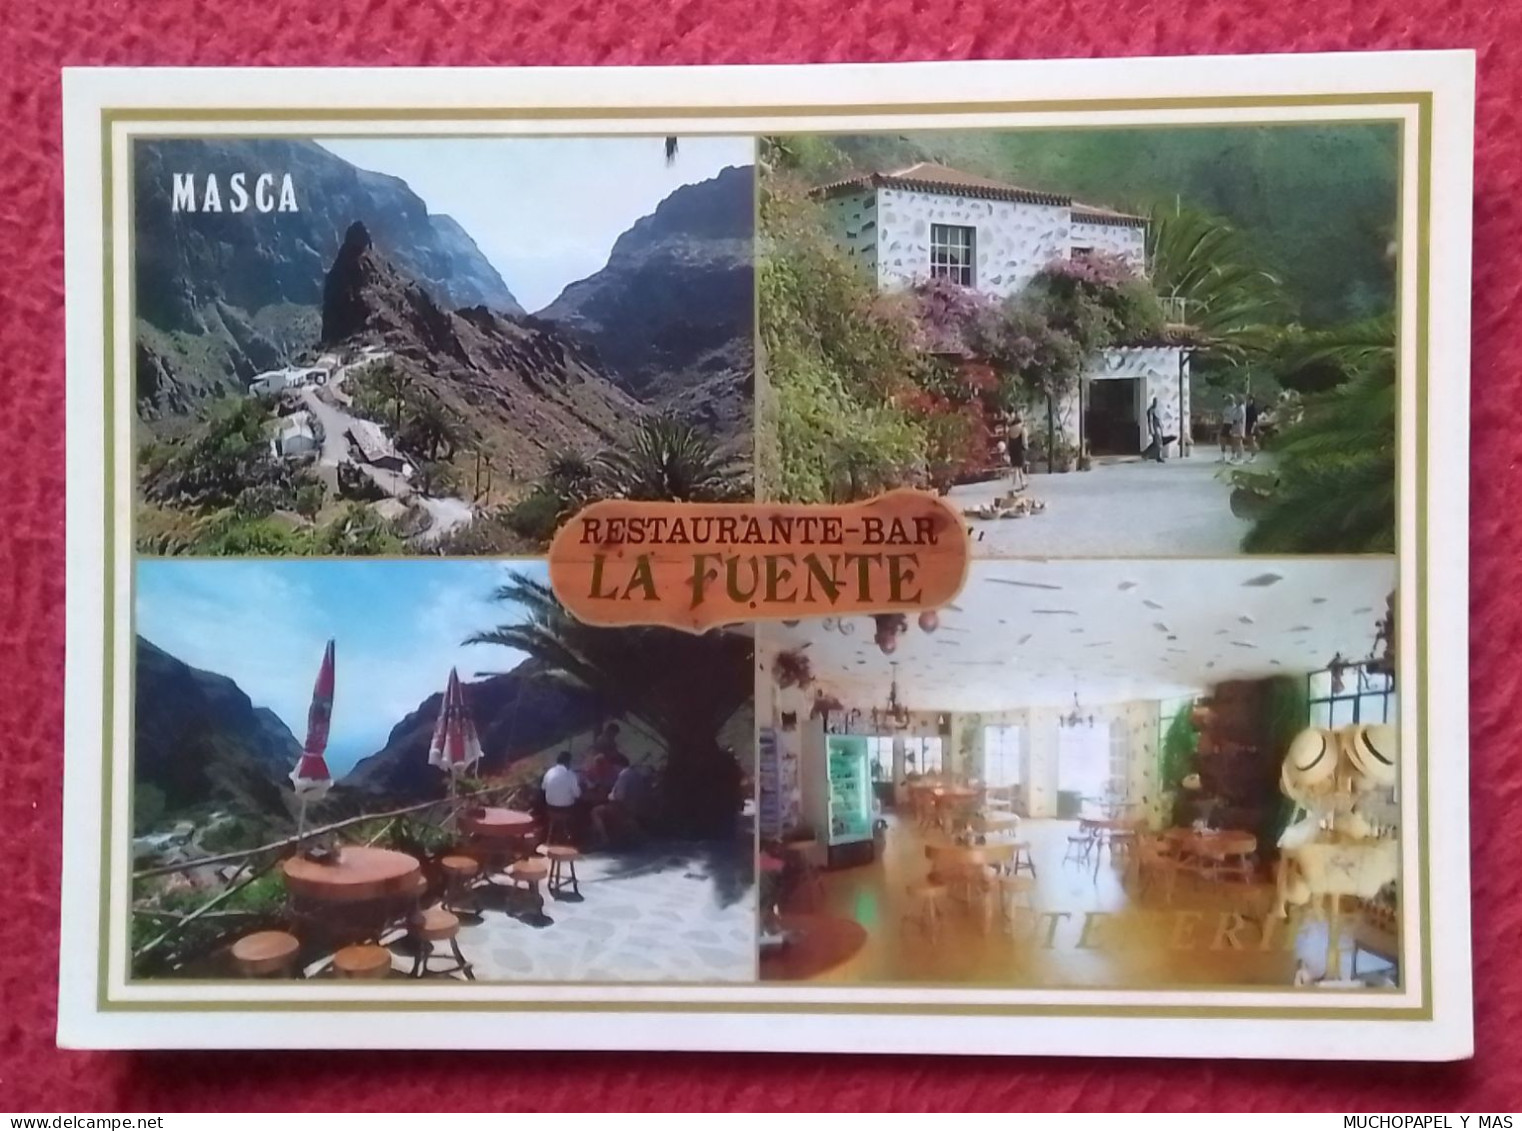 POSTAL POST CARD RESTAURANTE BAR LA FUENTE MIRADOR MASCA TENERIFE ISLAS CANARIAS SPAIN VISTAS..VUES. SPANIEN..ESPAGNE... - Hotels & Restaurants